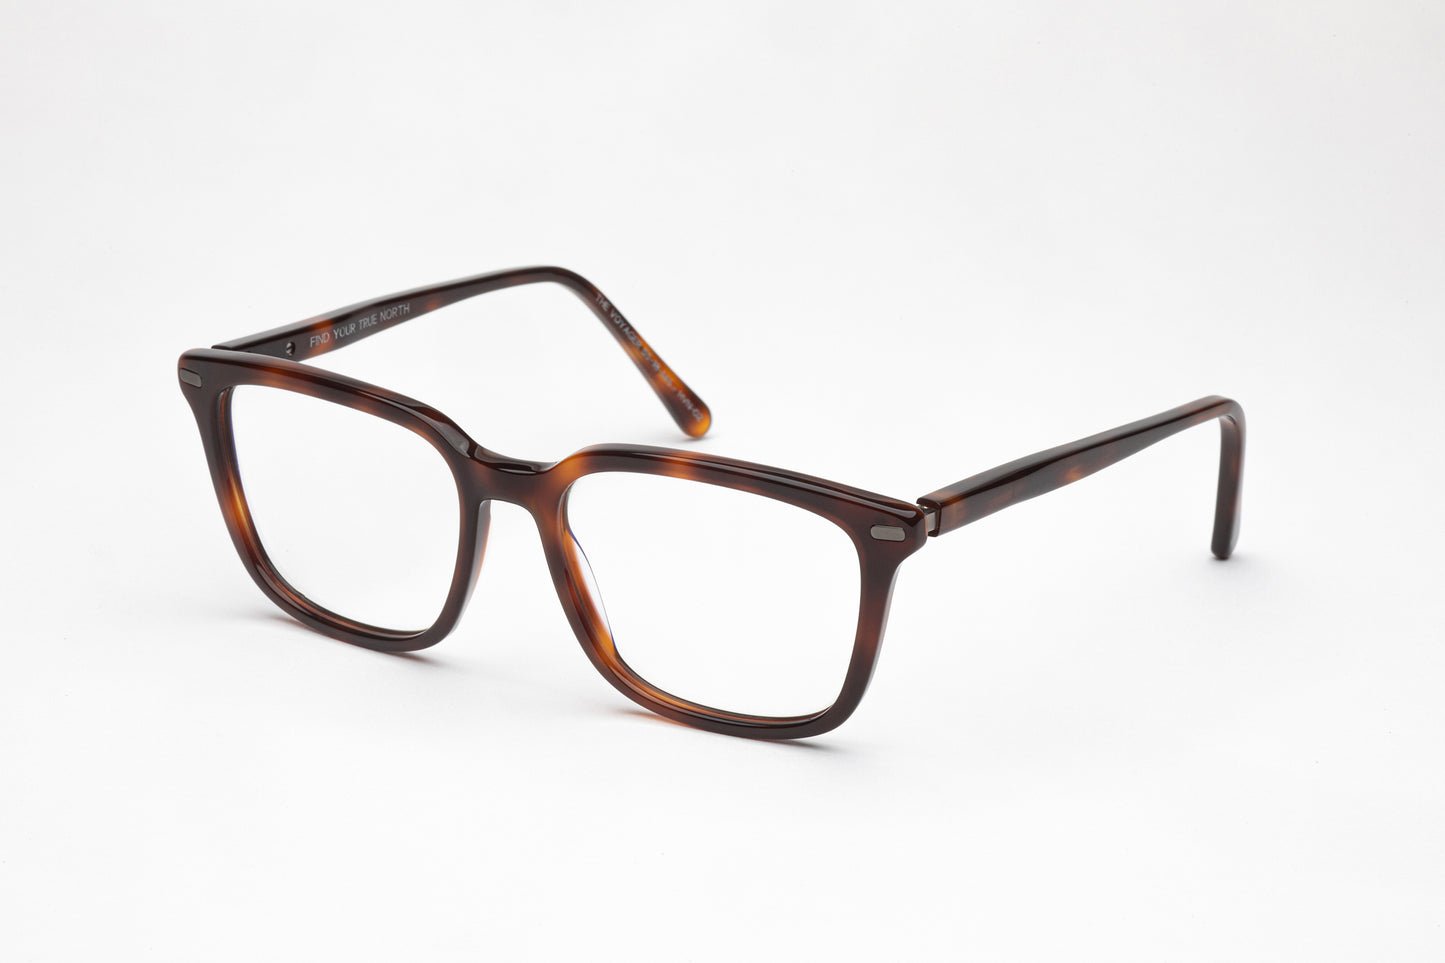 Angled View - The Voyager | Premium Square Acetate Frames – Designer Prescription Glasses  -  Tortoiseshell